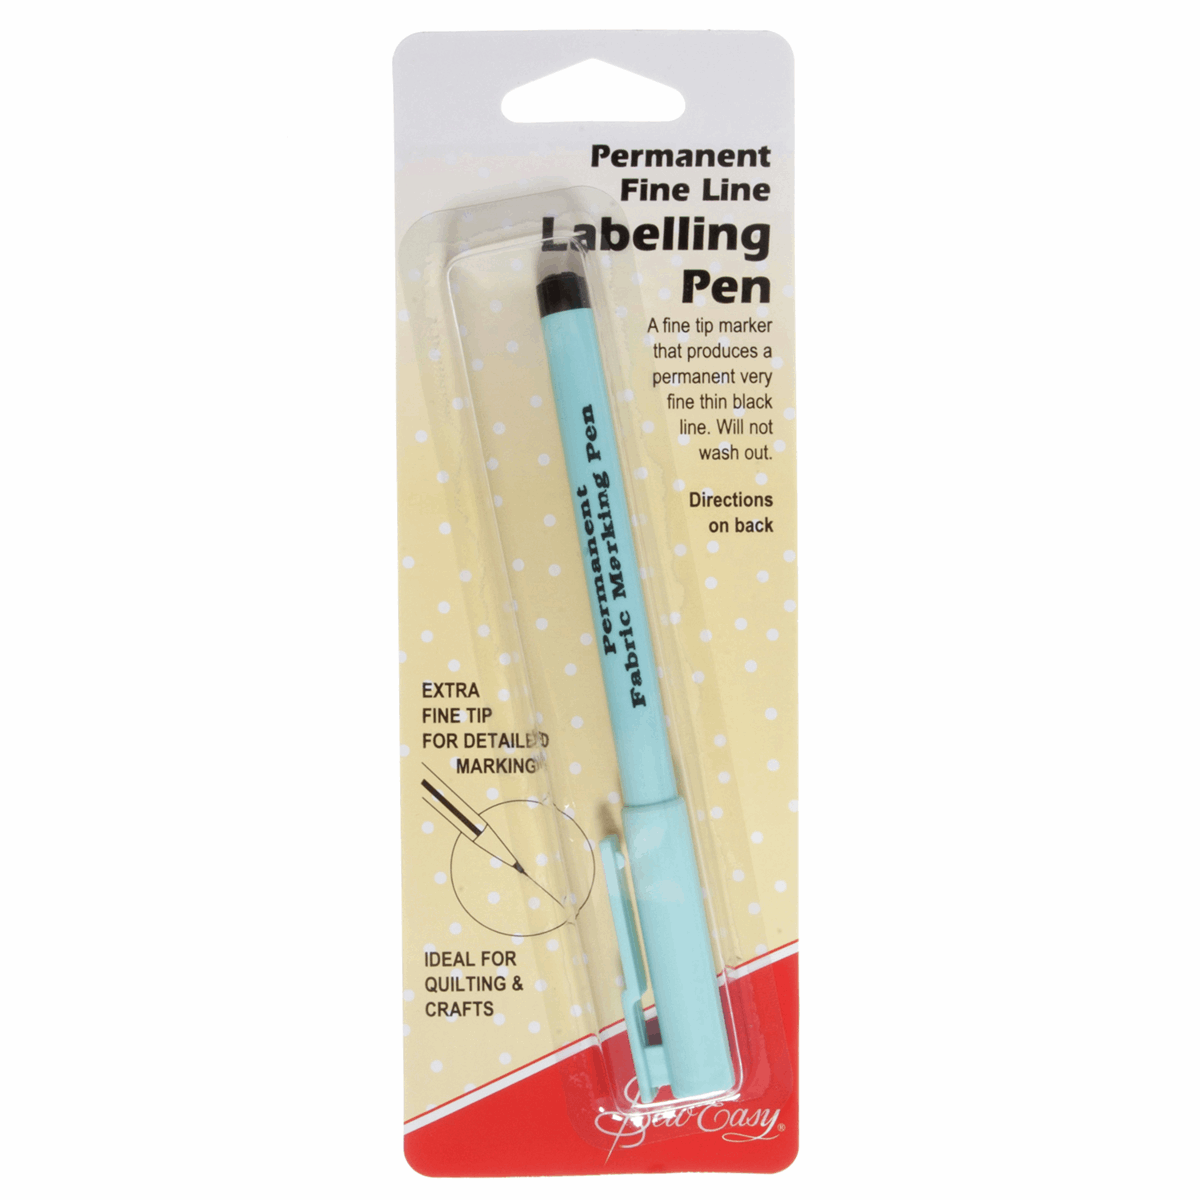 Fine Line Labelling/Permanent Pen